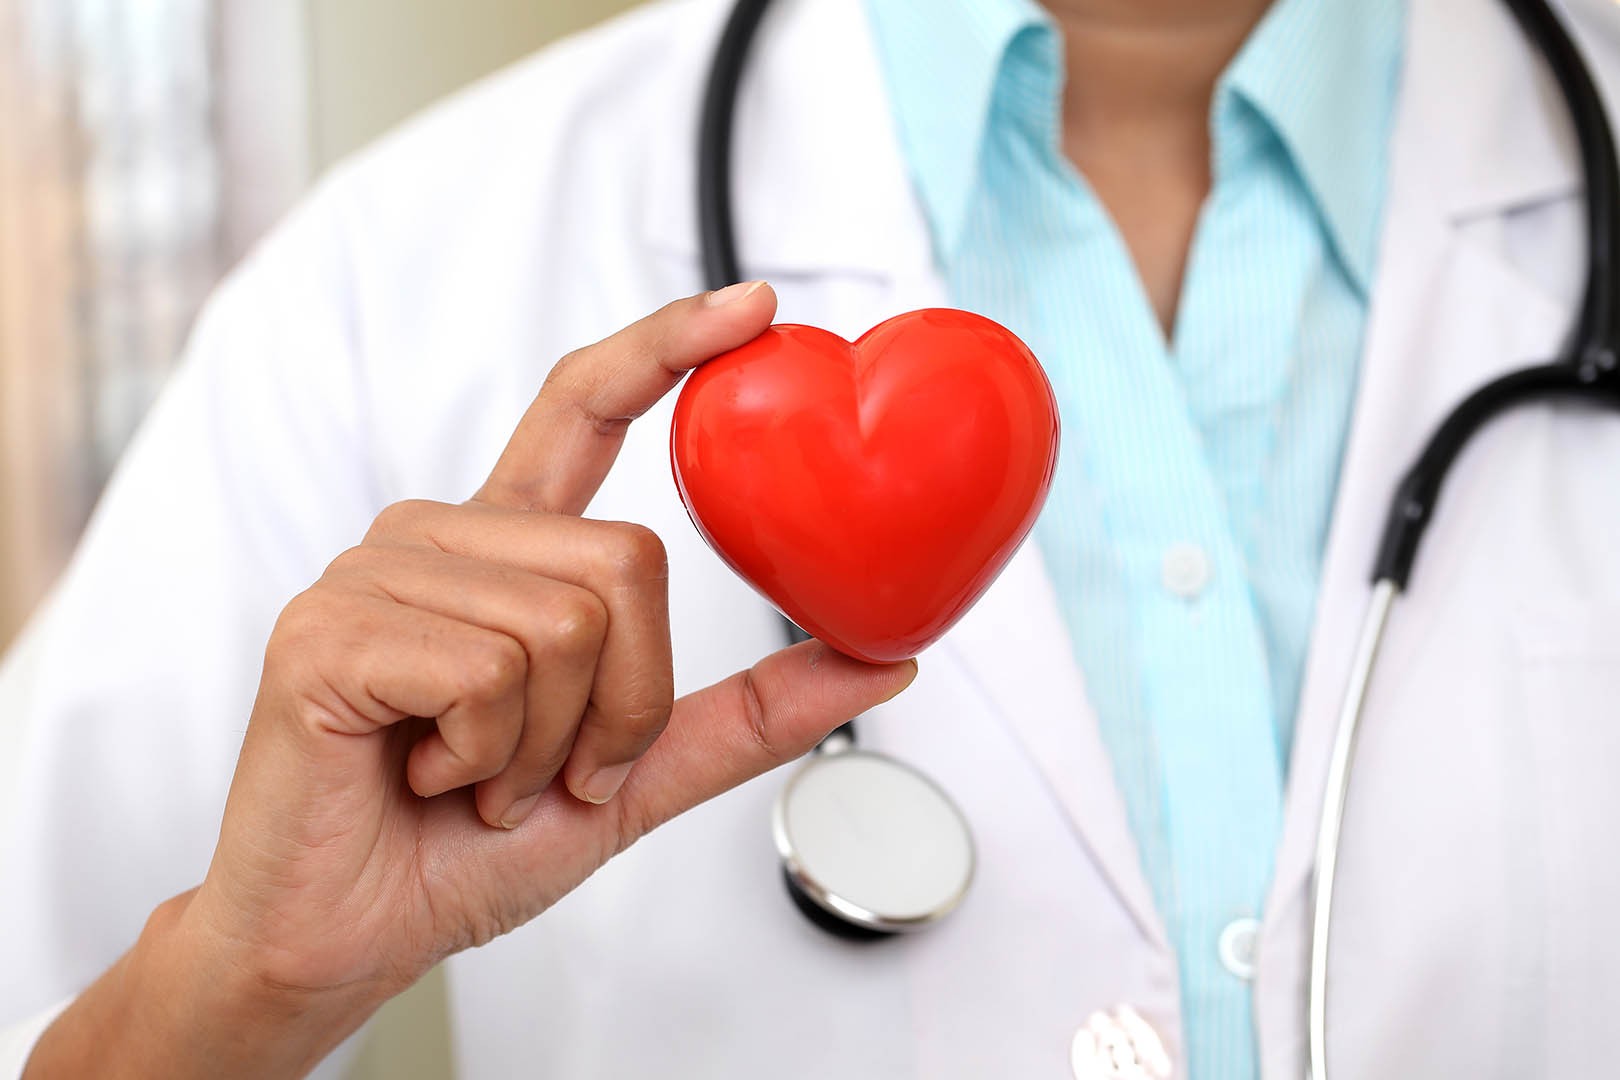 7 Tips Menjaga Kesehatan Jantung dengan Mudah - Jovee.id